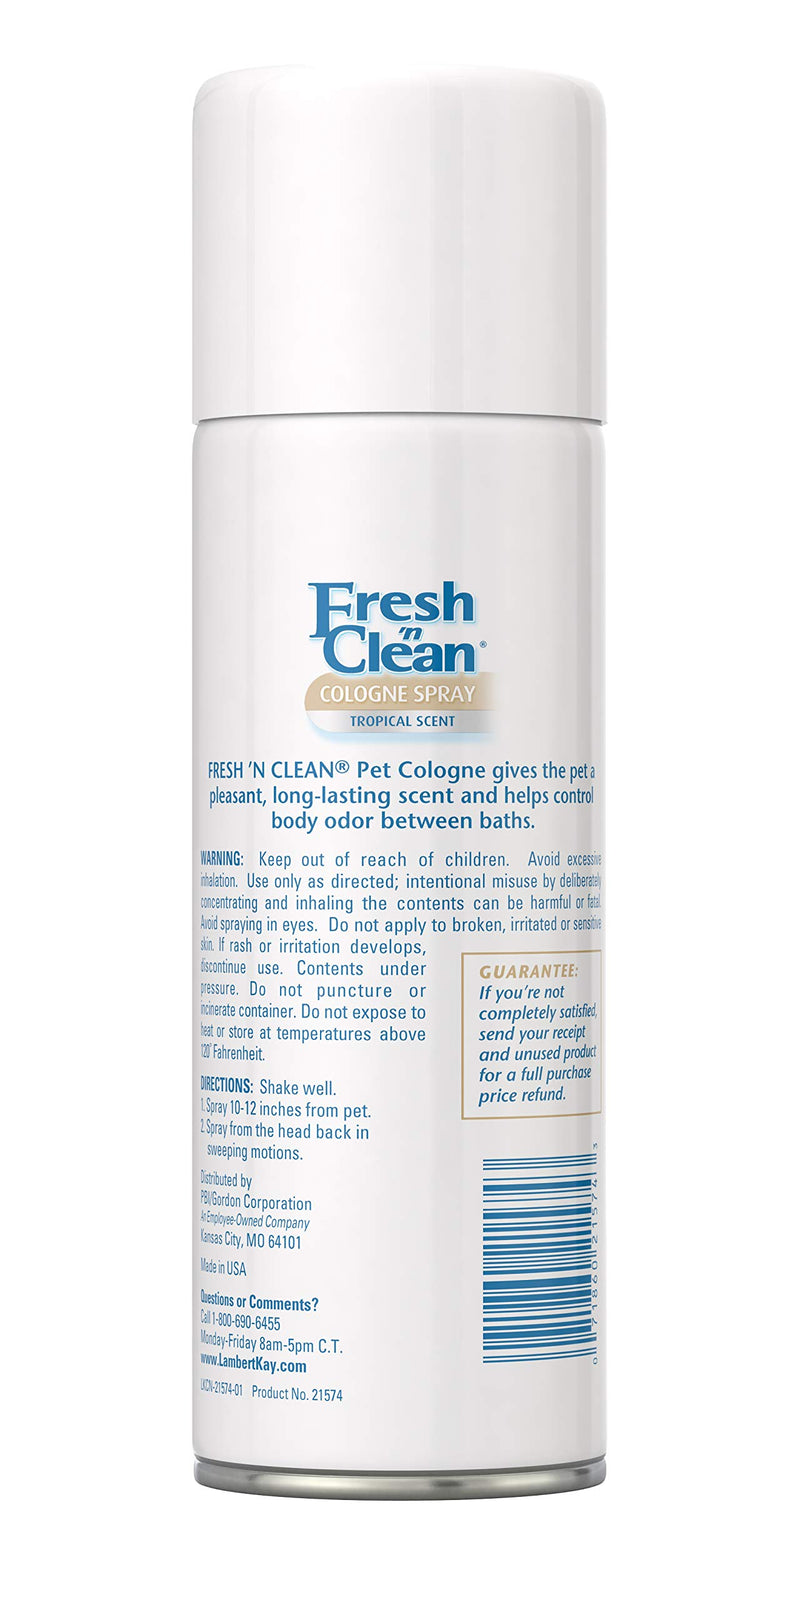 PetAg Fresh 'n Clean Fresh 'n Clean Cologne Spray Tropical Scent - PawsPlanet Australia